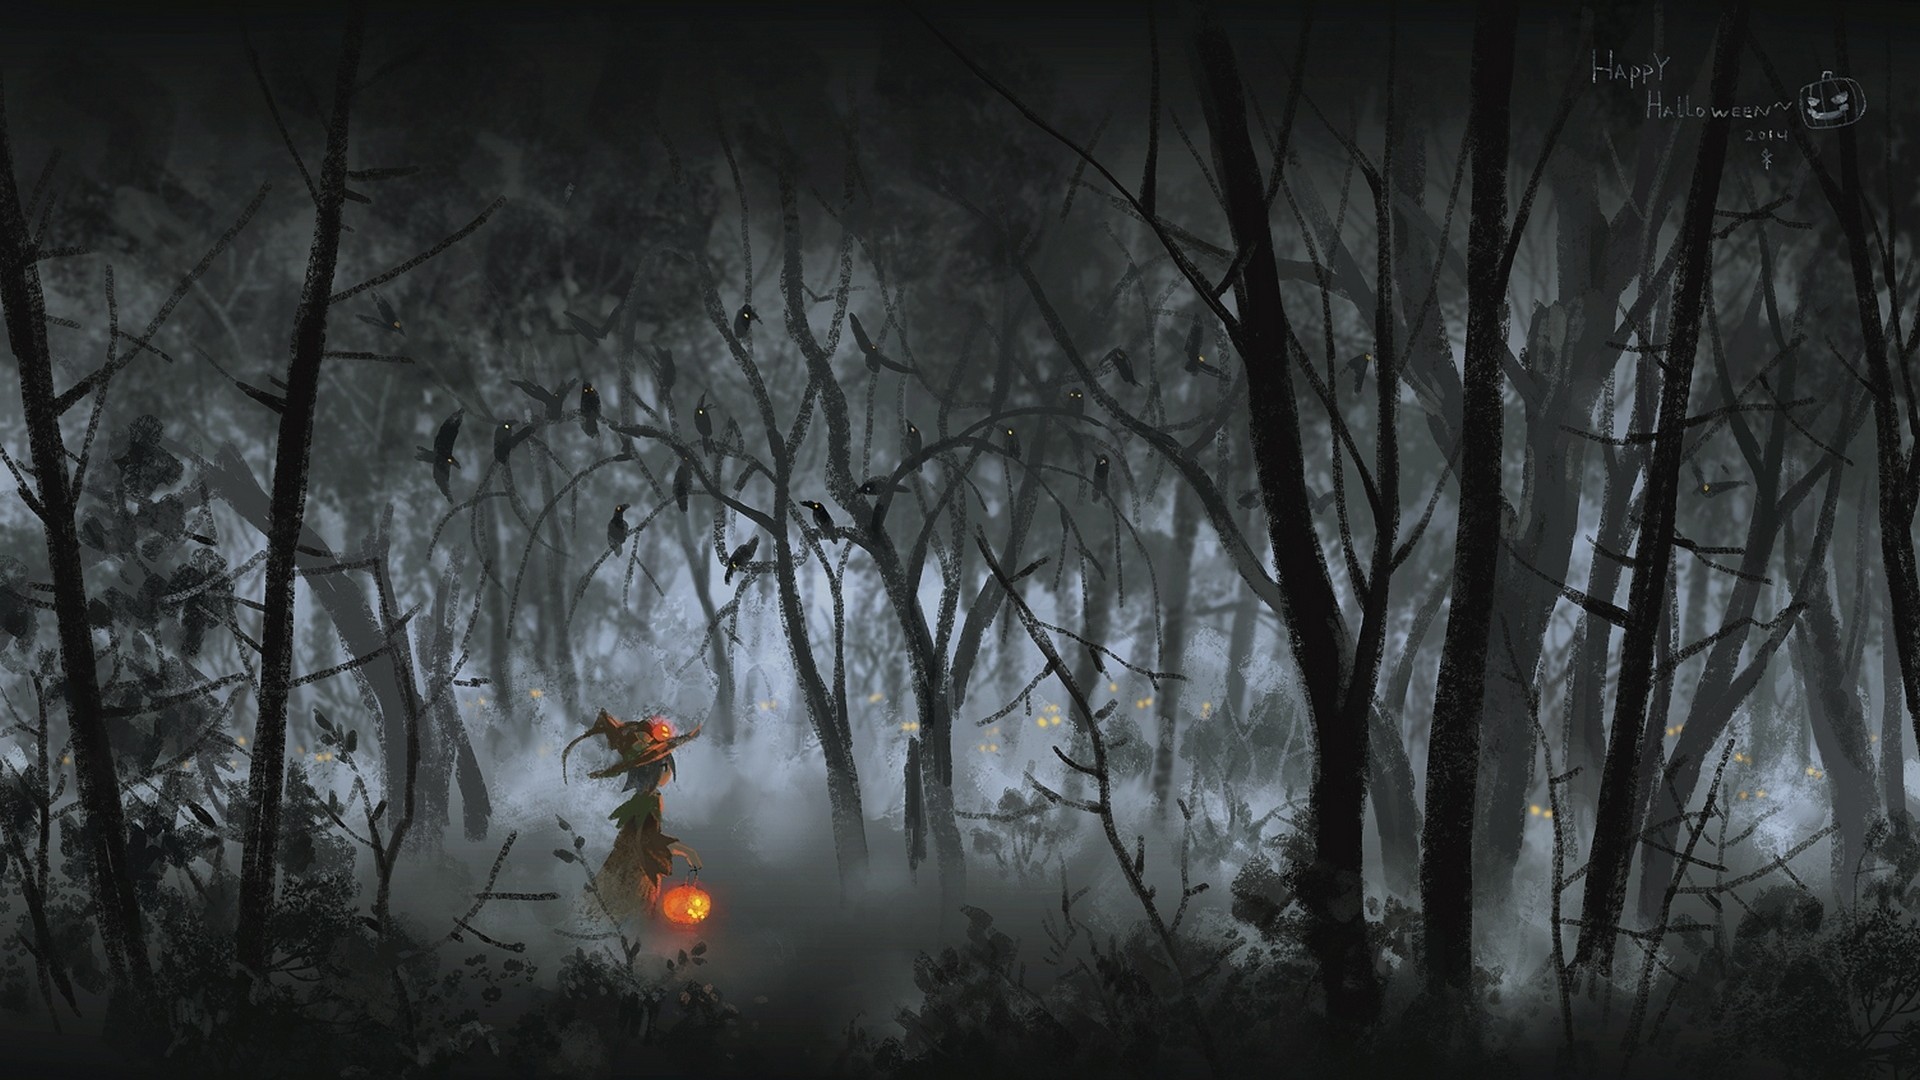 General 1920x1080 artwork fantasy art Halloween pumpkin forest deep forest